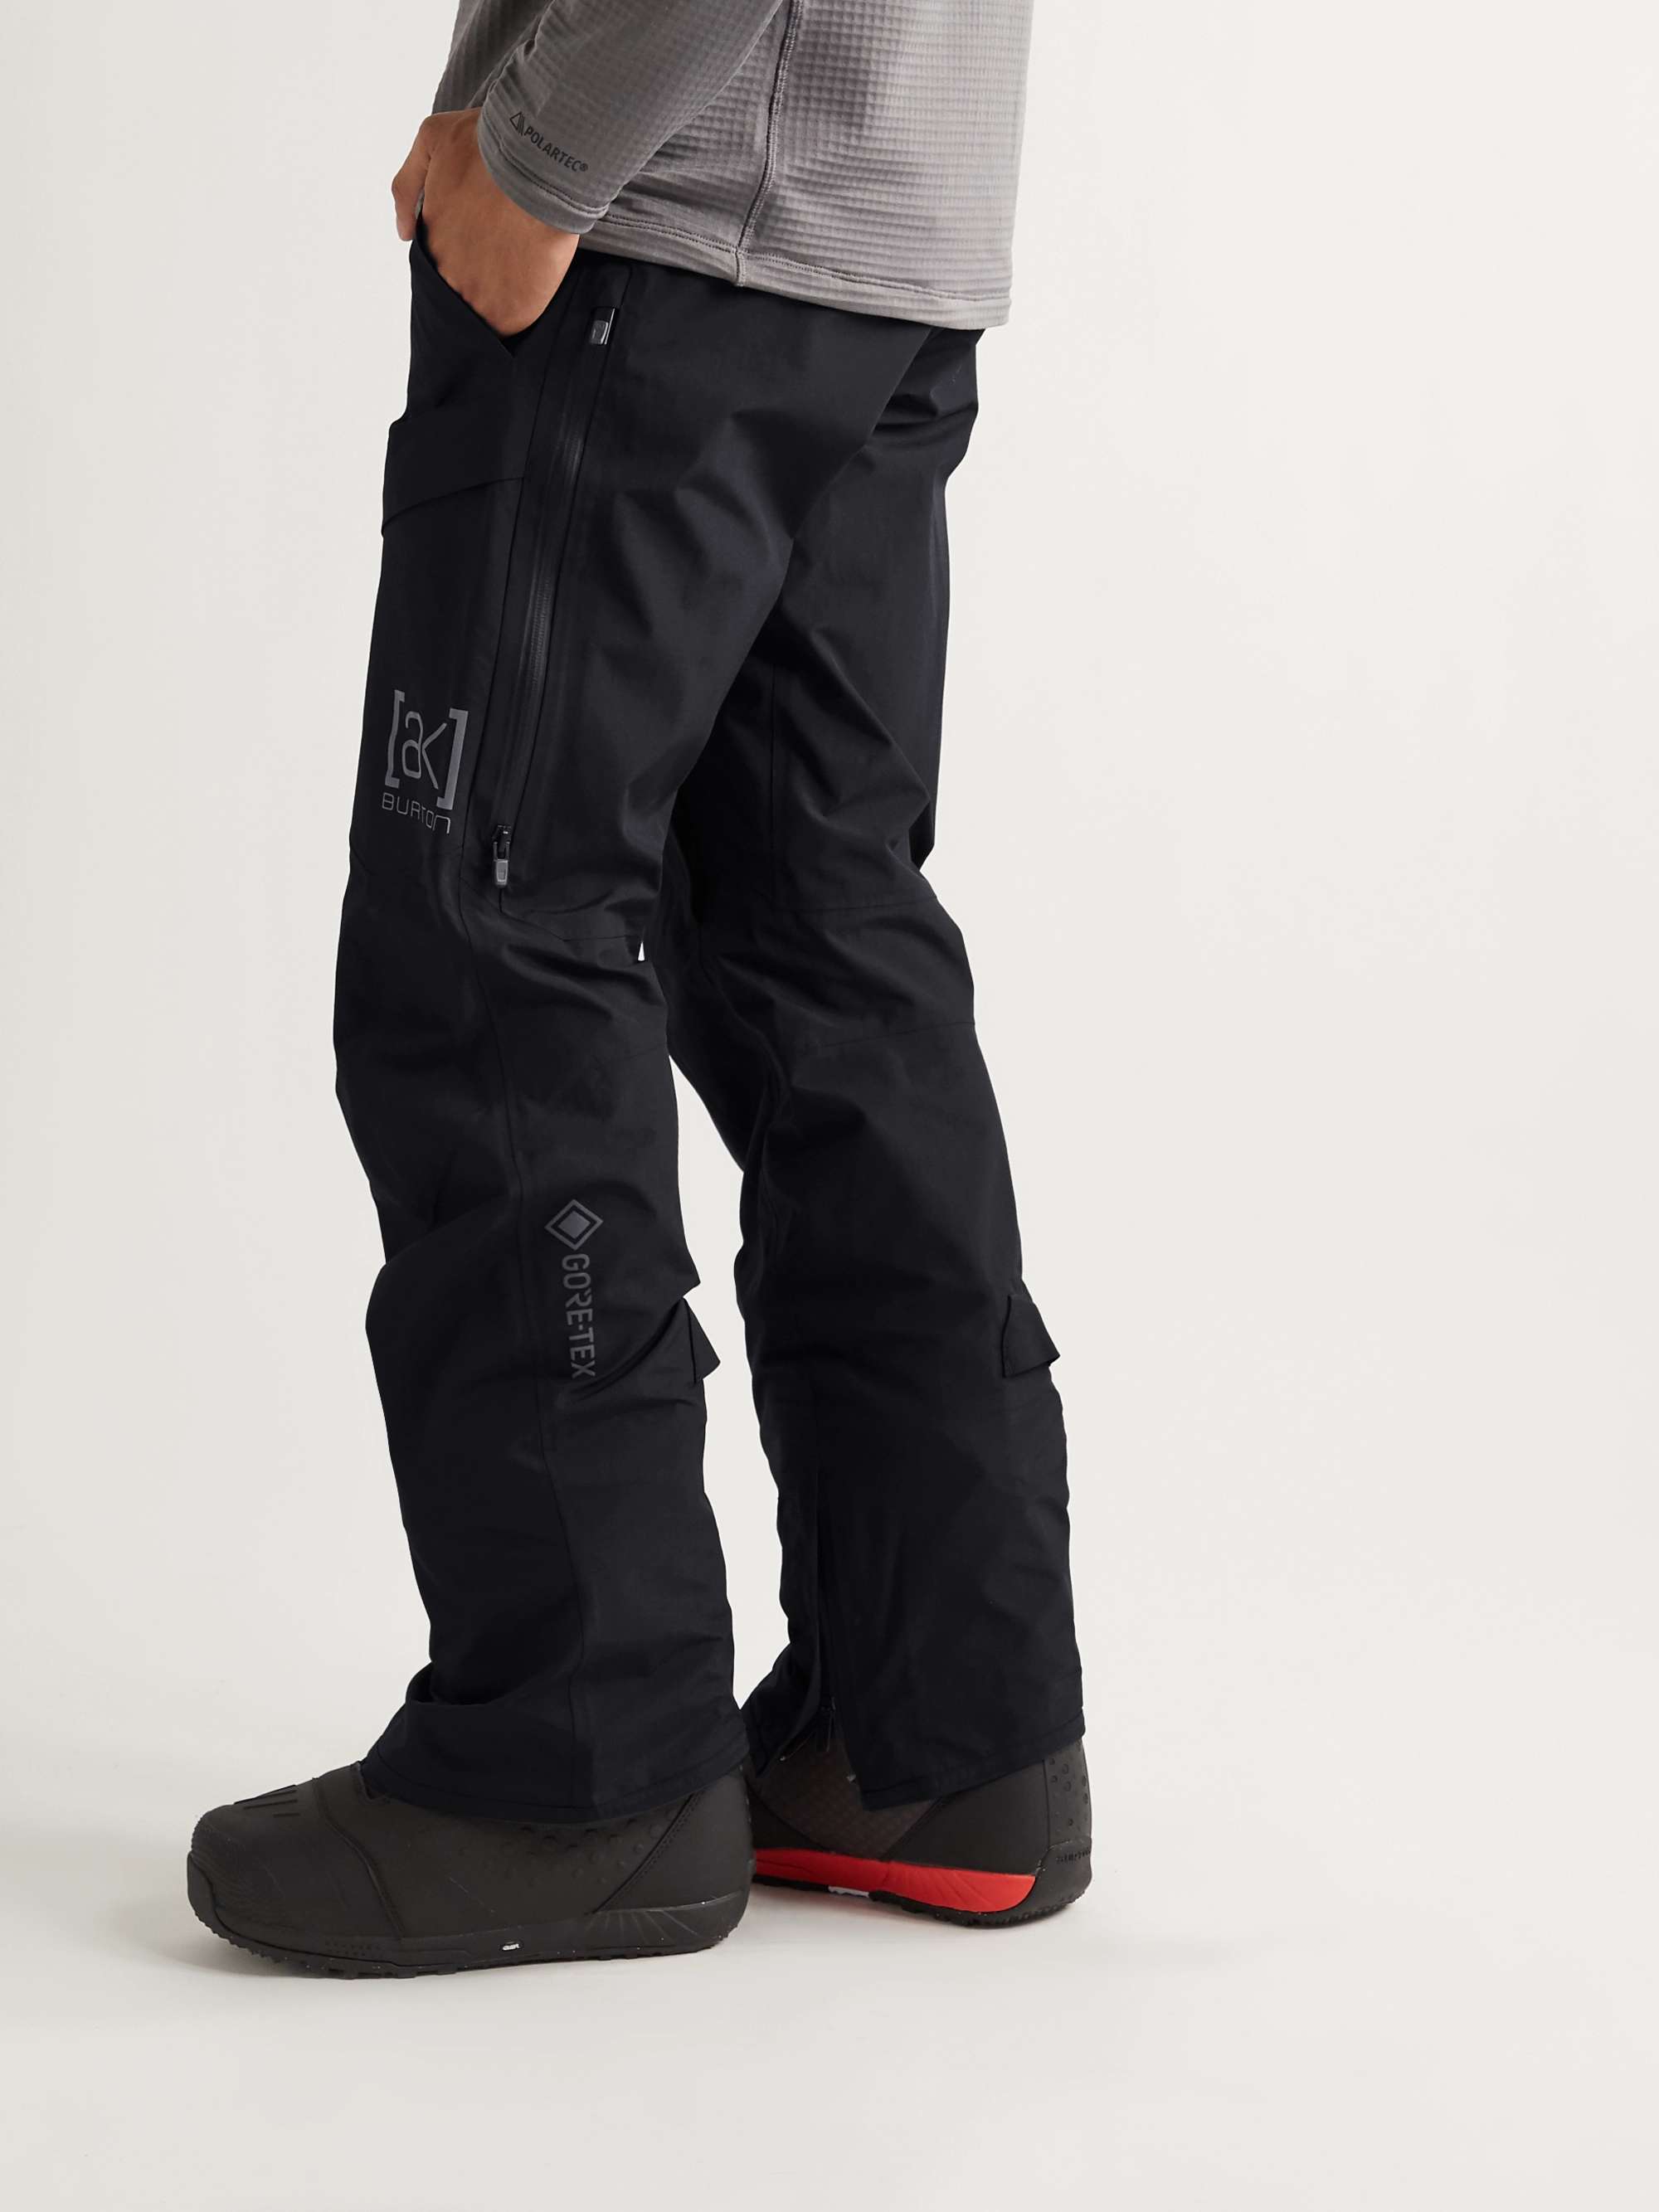 BURTON [ak] Cyclic GORE‑TEX Snowboarding Trousers